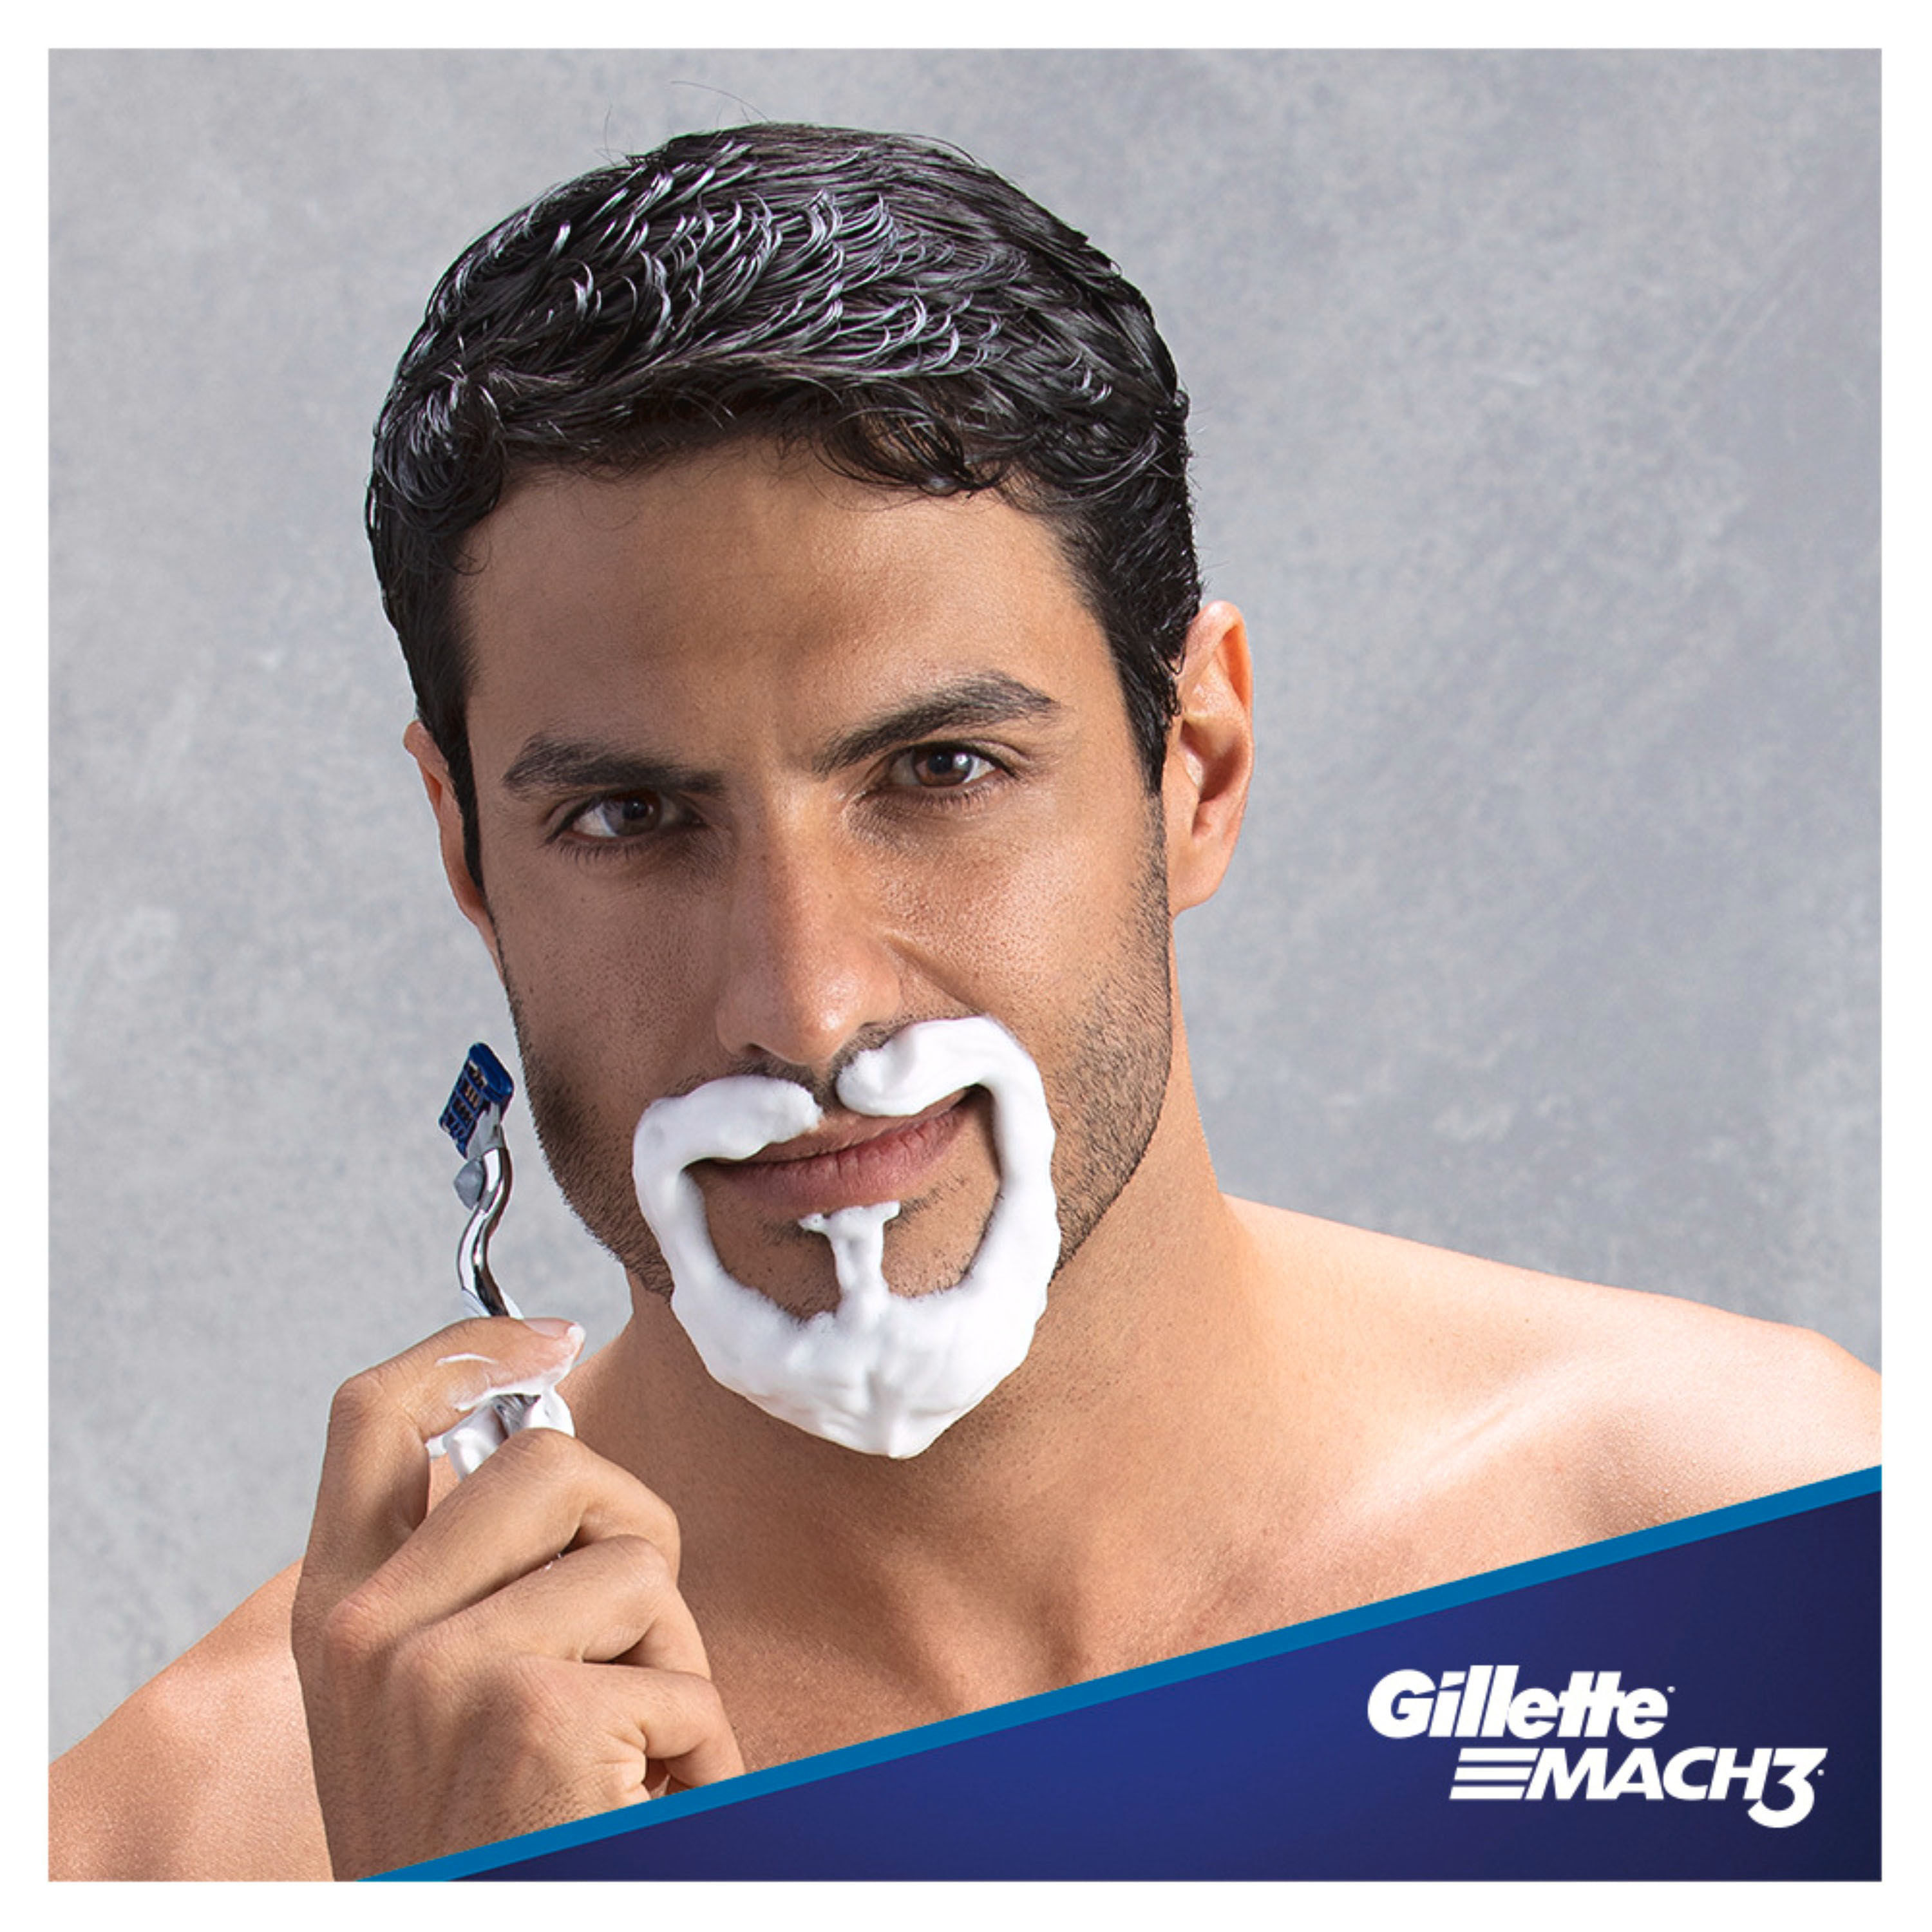 Espuma Para Afeitar Hombre Gillette